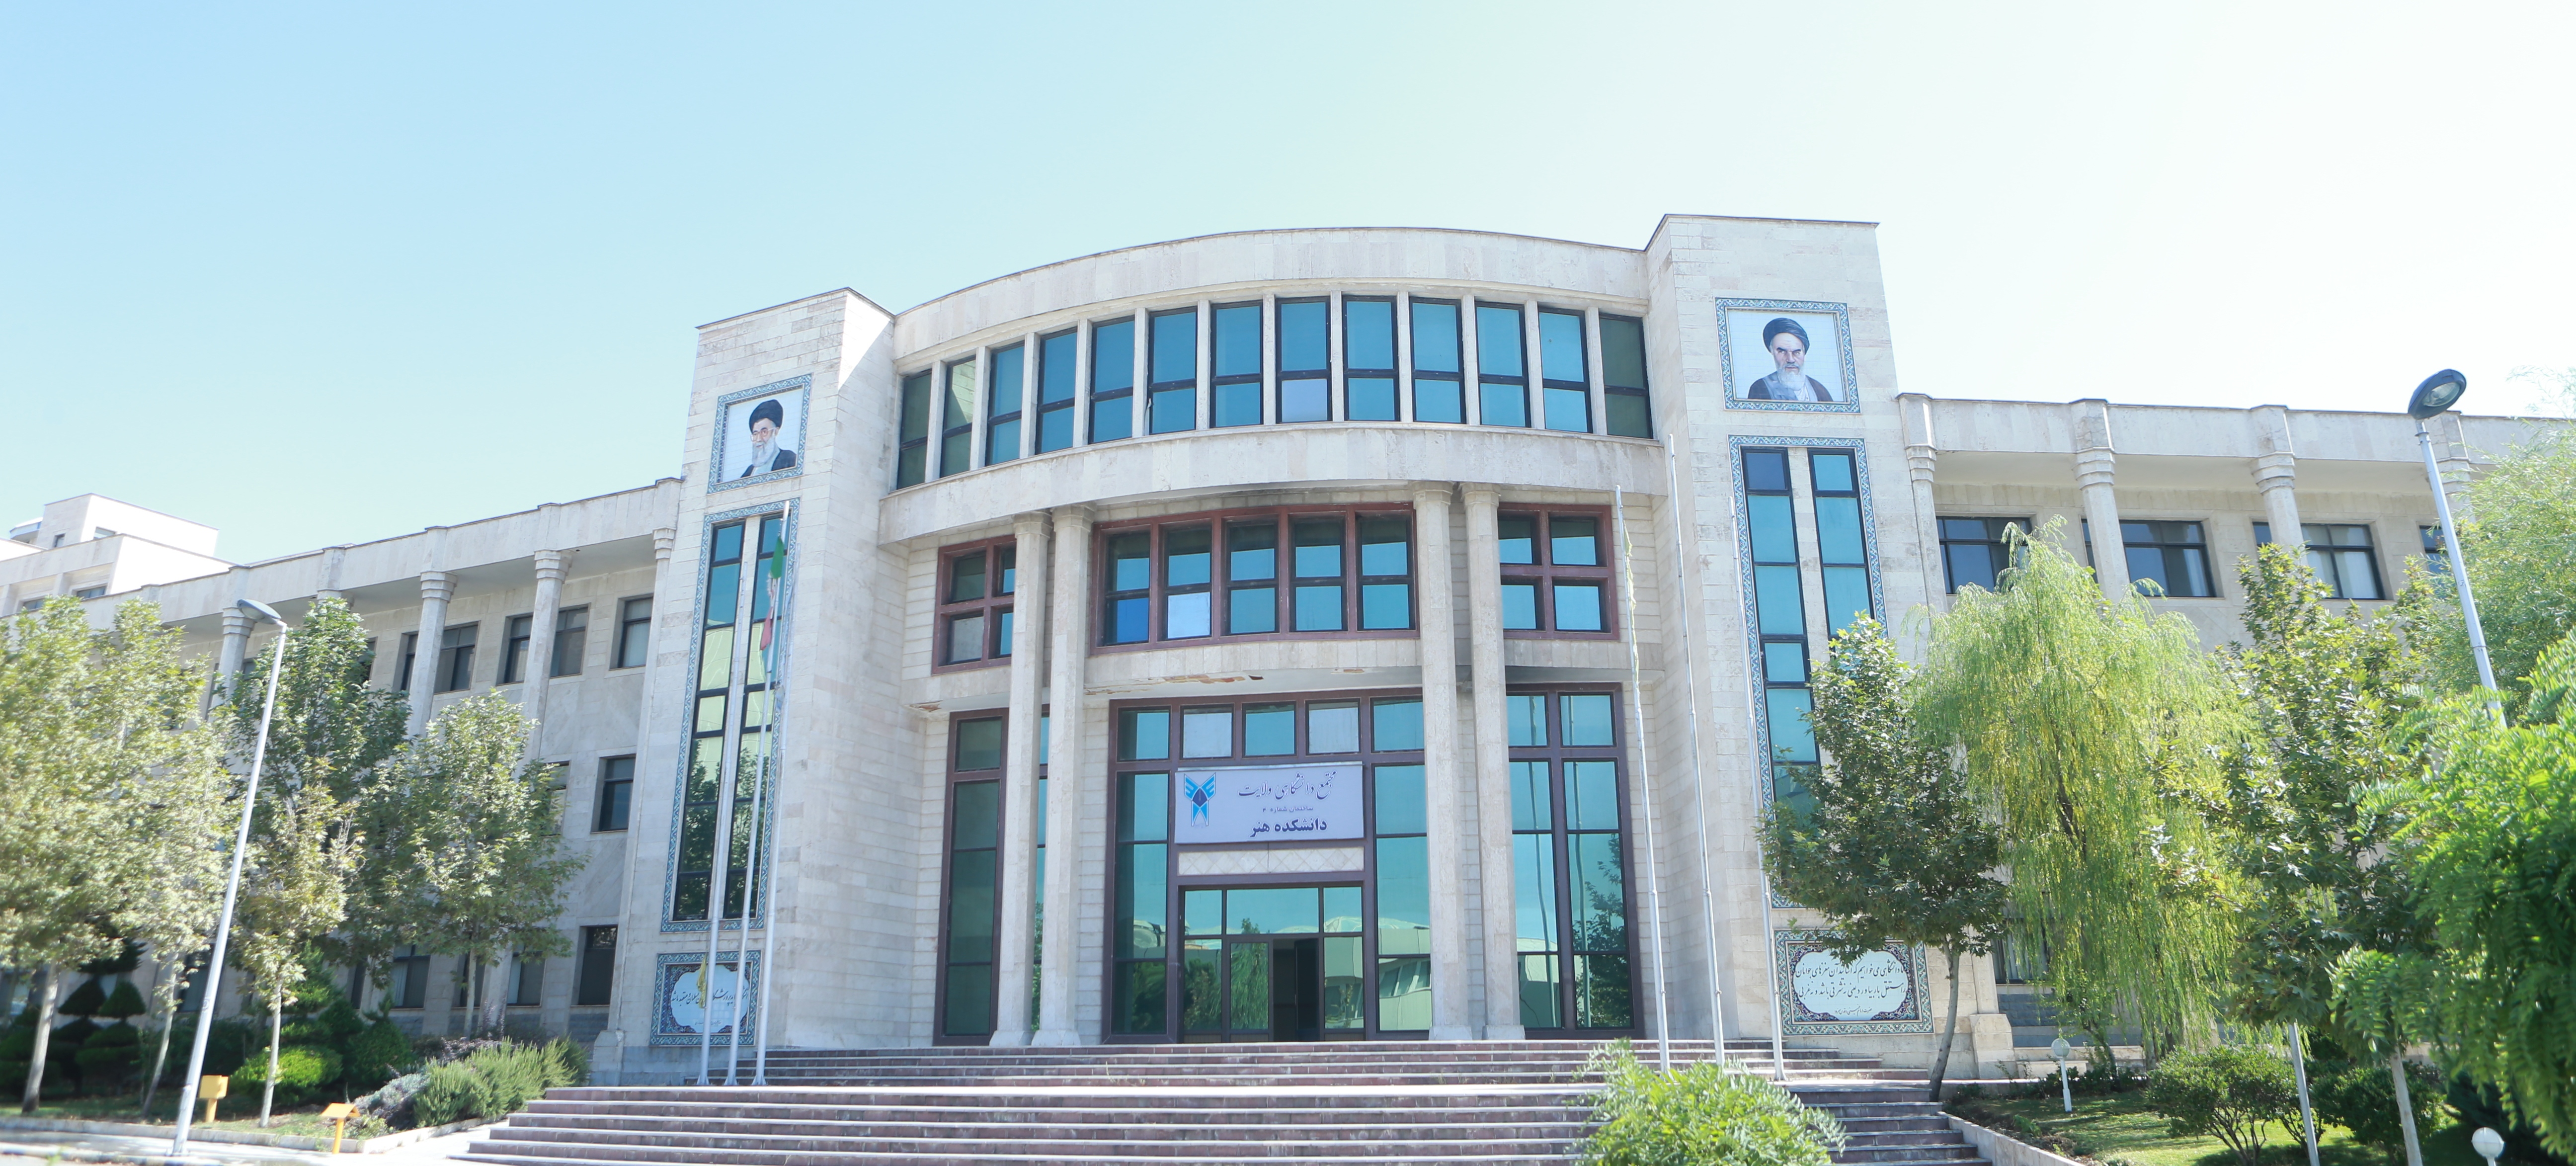 مركز روانشناسي دانشگاه تهران
